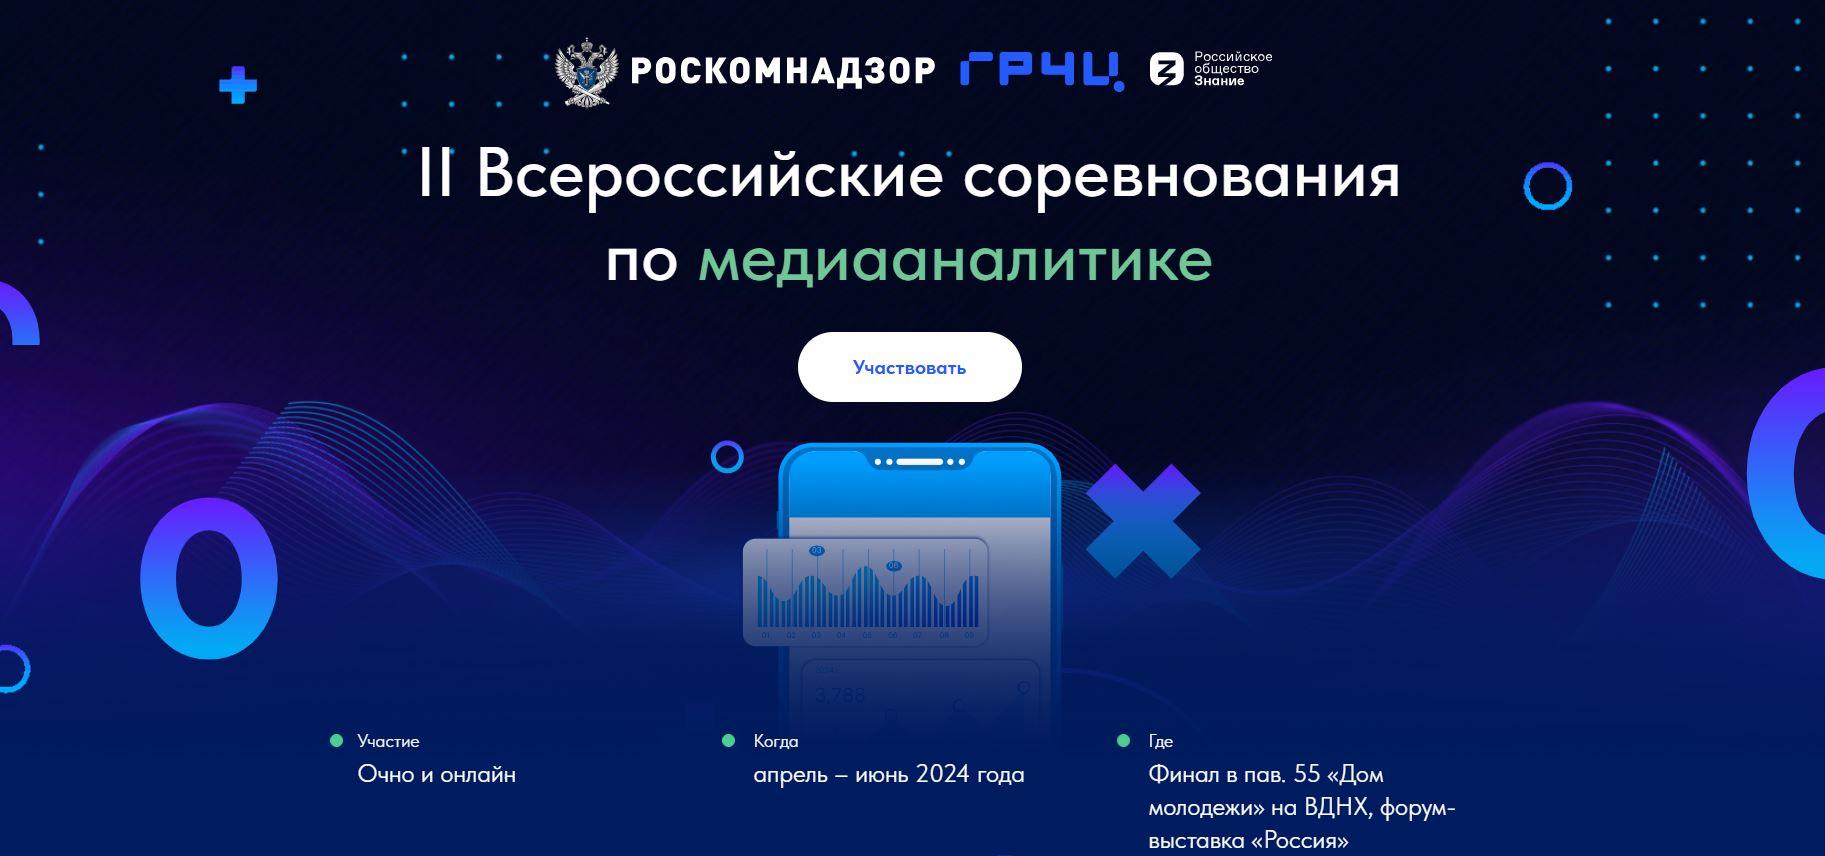 Орловчане могут принять участие во всероссийских соревнованиях по медиааналитике